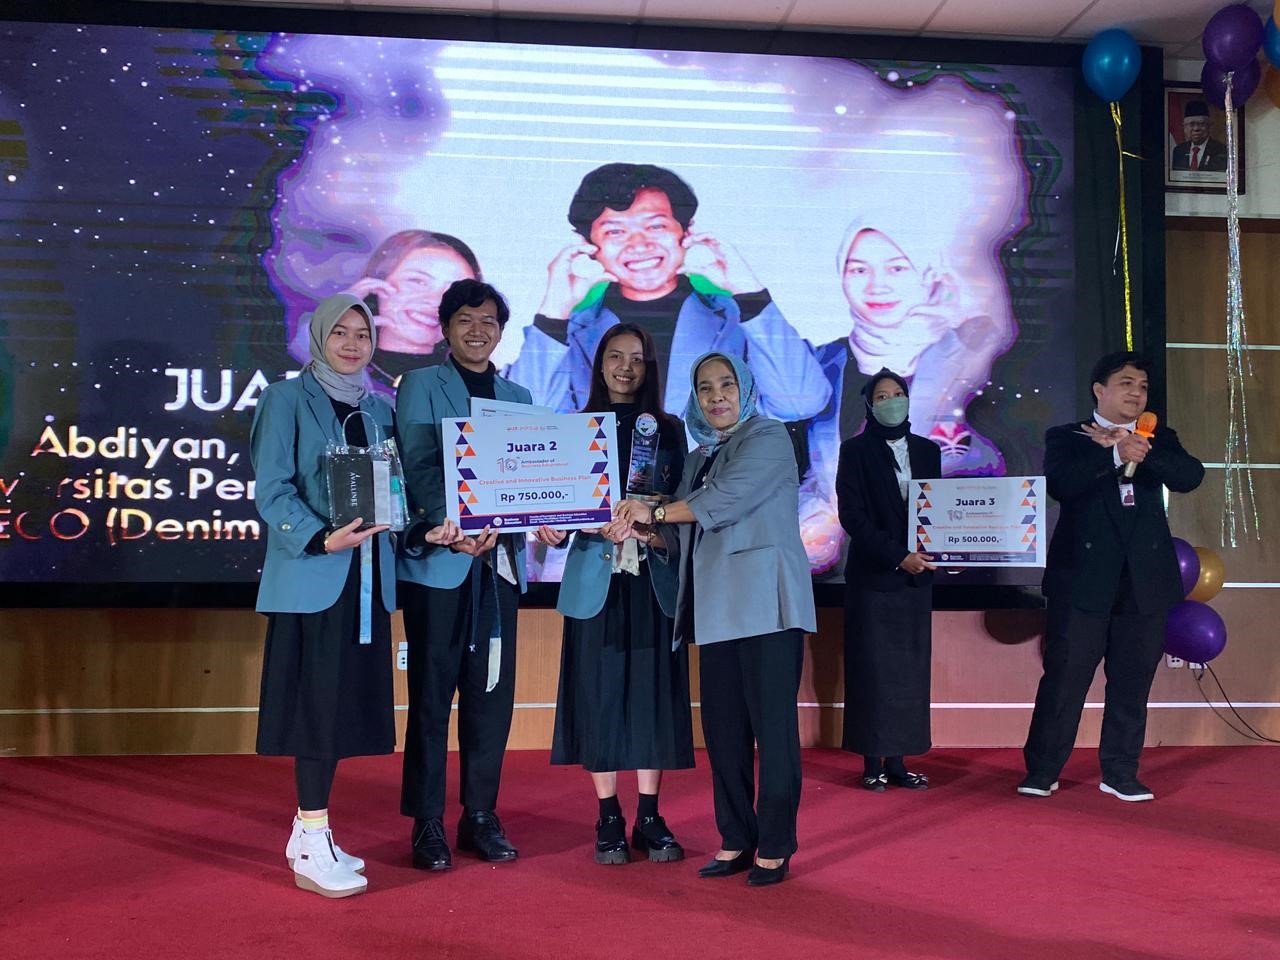 Program Studi Pendidikan Tata Busana menjadi Juara  dalam ajang The Ambassador of Business Edupreneur